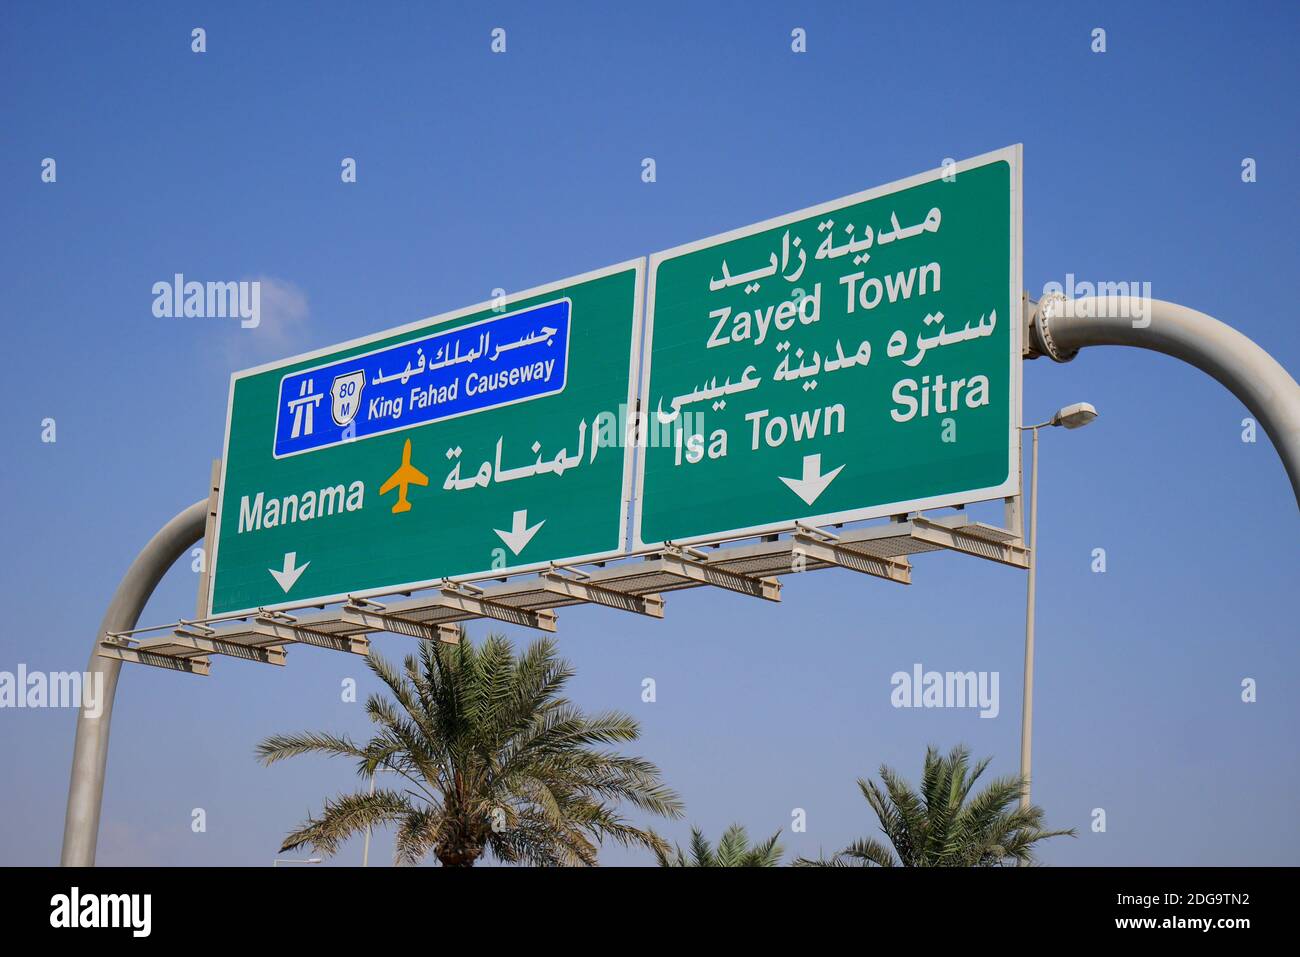 Signalisation routière bilingue, arabe et anglais, indiquant la chaussée du Roi Fahd, Manama, l'aéroport international, Zayed Town, ISA Town, Sitra, Bahreïn Banque D'Images